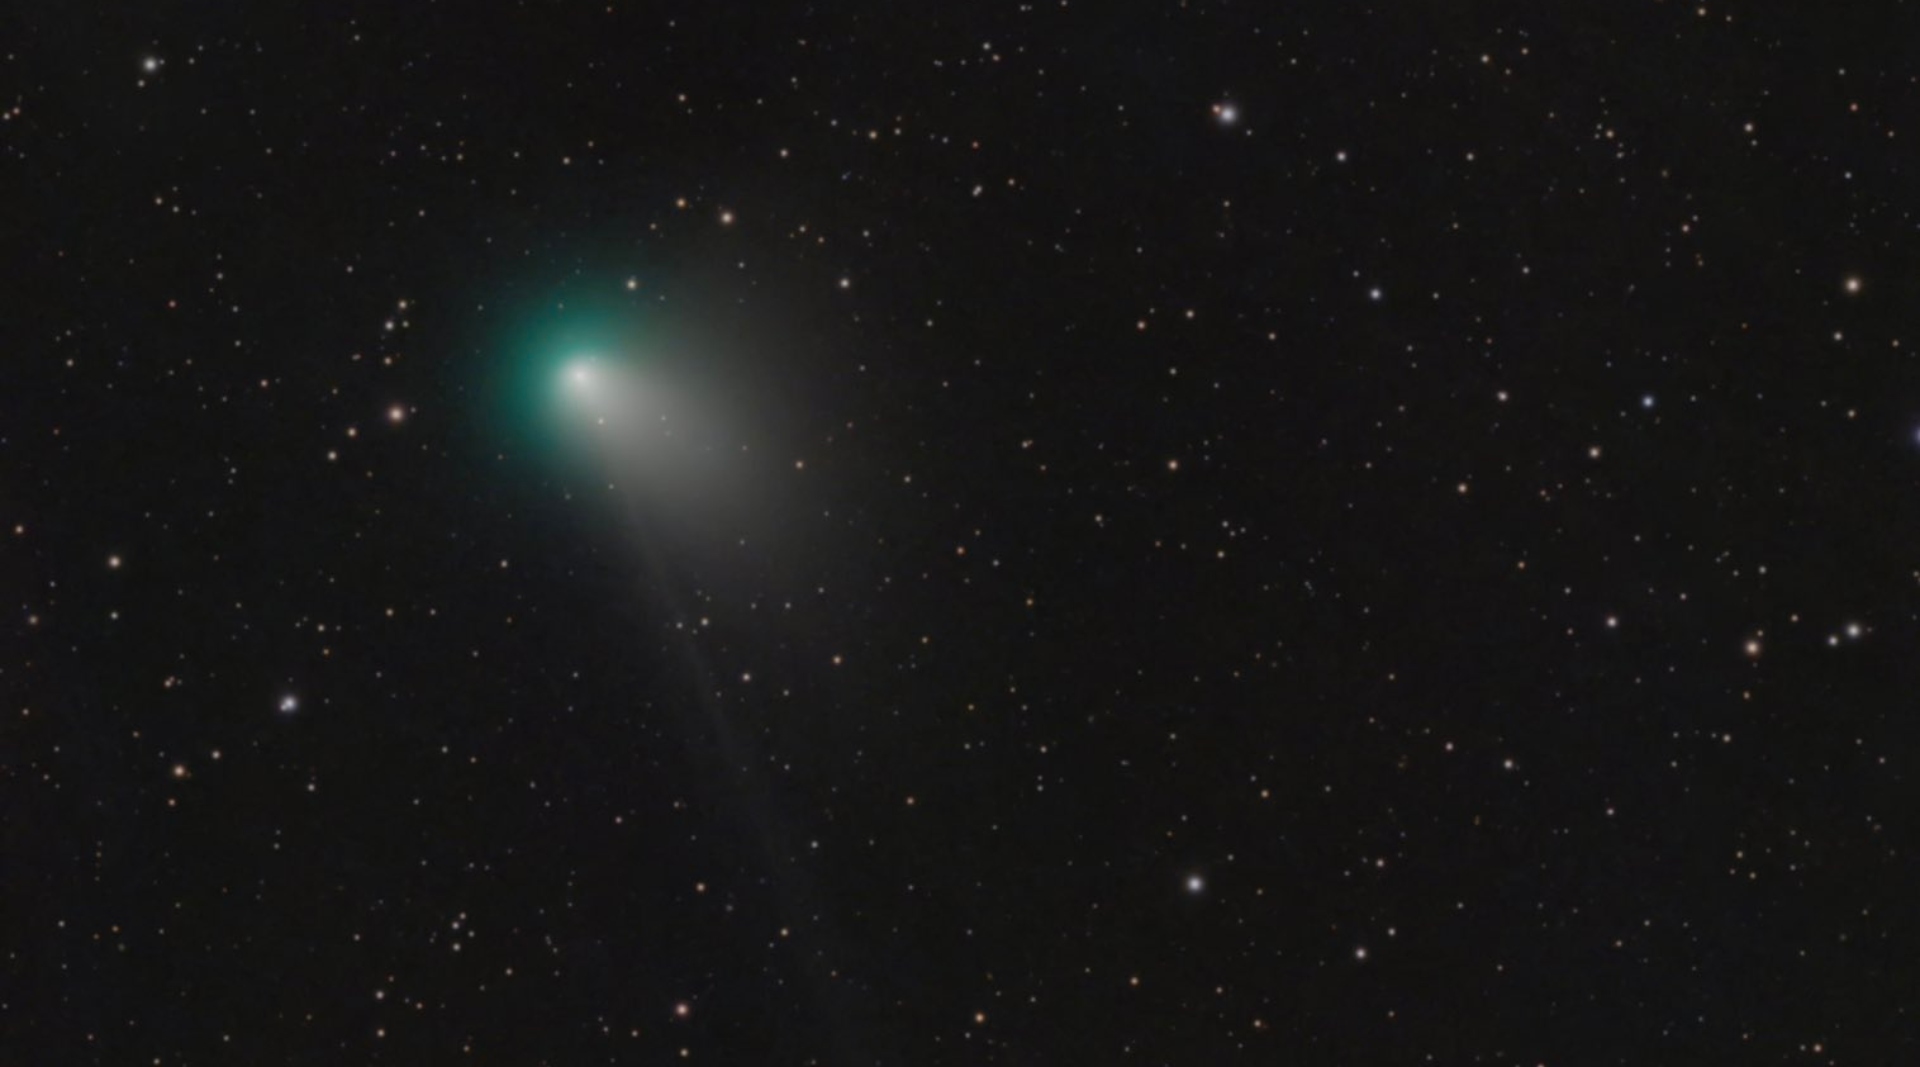 El brillante cometa fue fotografiado por especialistas en la materia desde los primeros días del 2023. (Twitter/@brennanmgilmore)